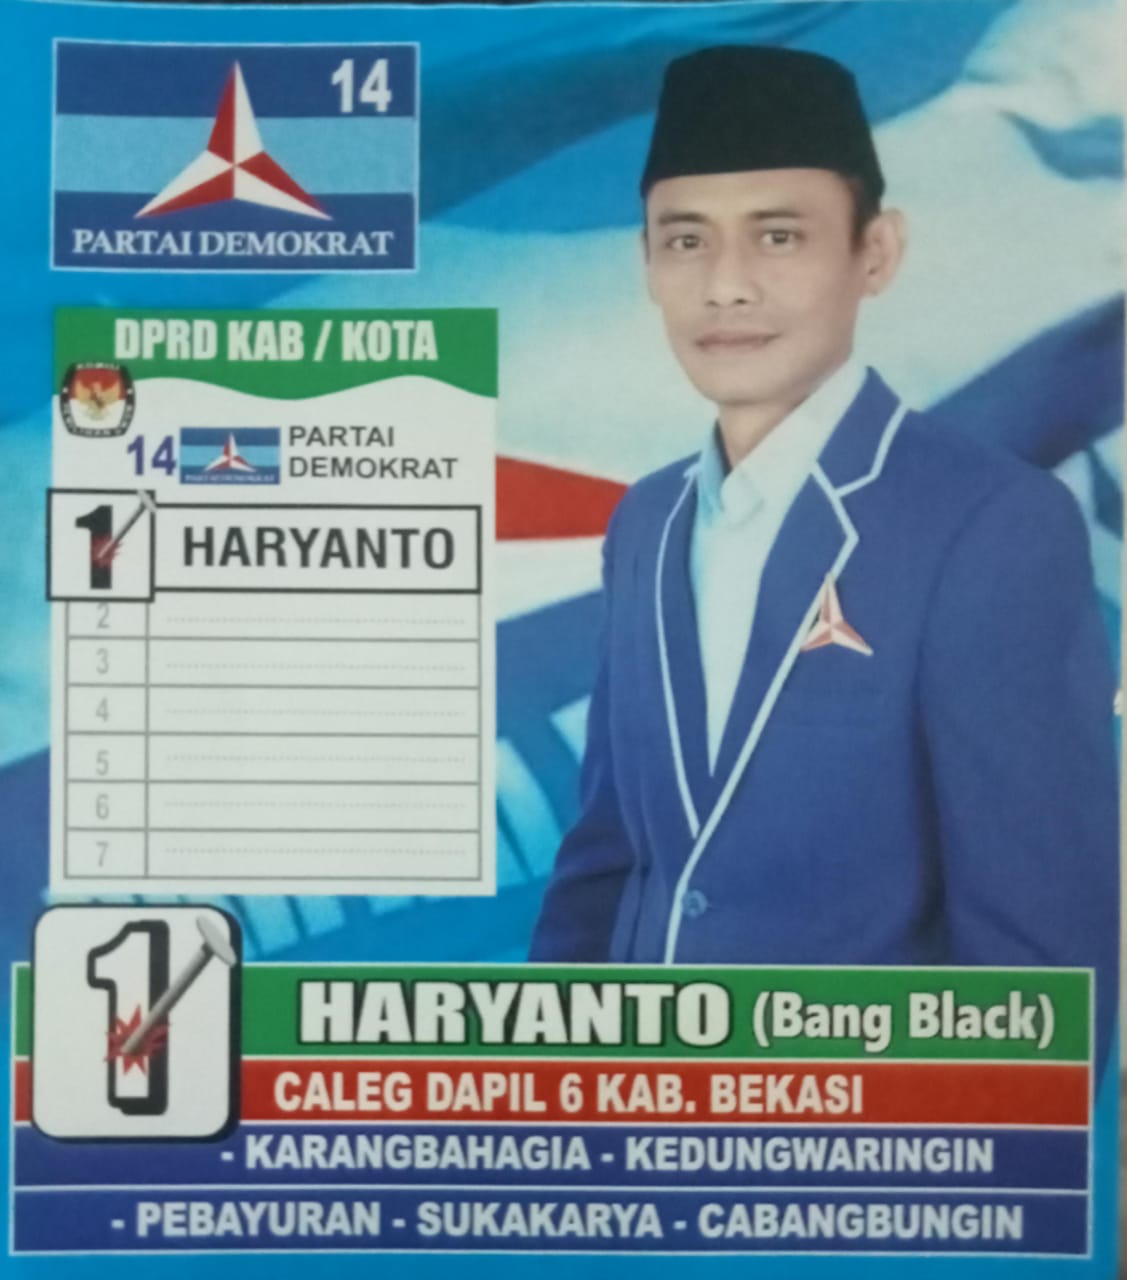 Haryanto (Black) Caleg Partai Demokrat Nomor Urut (1), Kian Populer Ditengah Masyarakat Dapil 6 (enam) Kabupaten Bekasi.